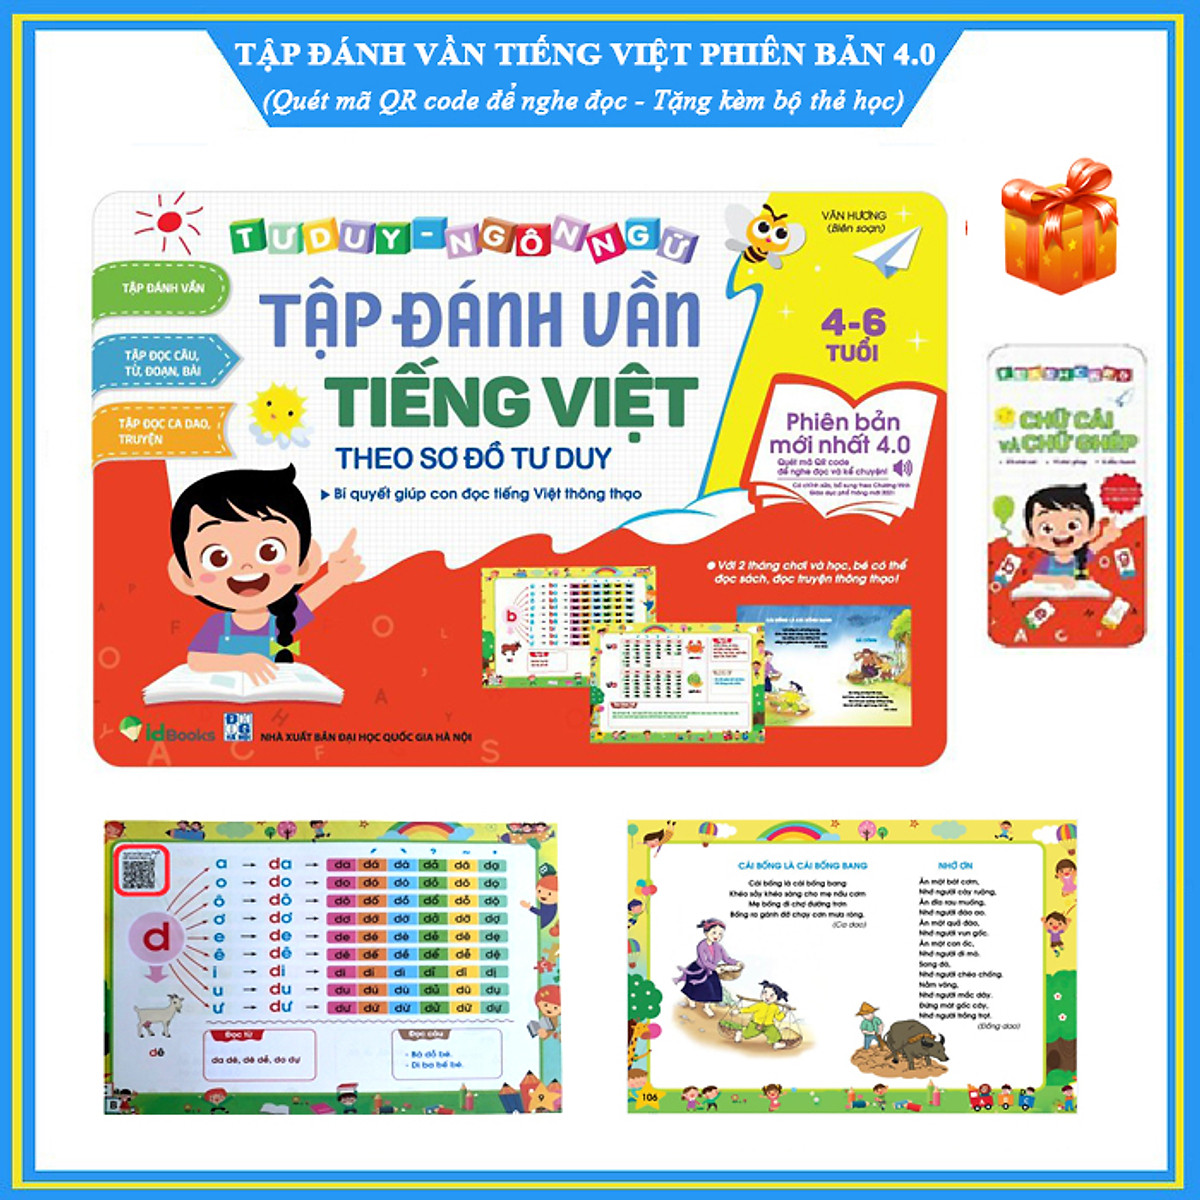 Tập đánh vần tiếng Việt theo sơ đồ tư duy phiên bản mới nhất 4.0